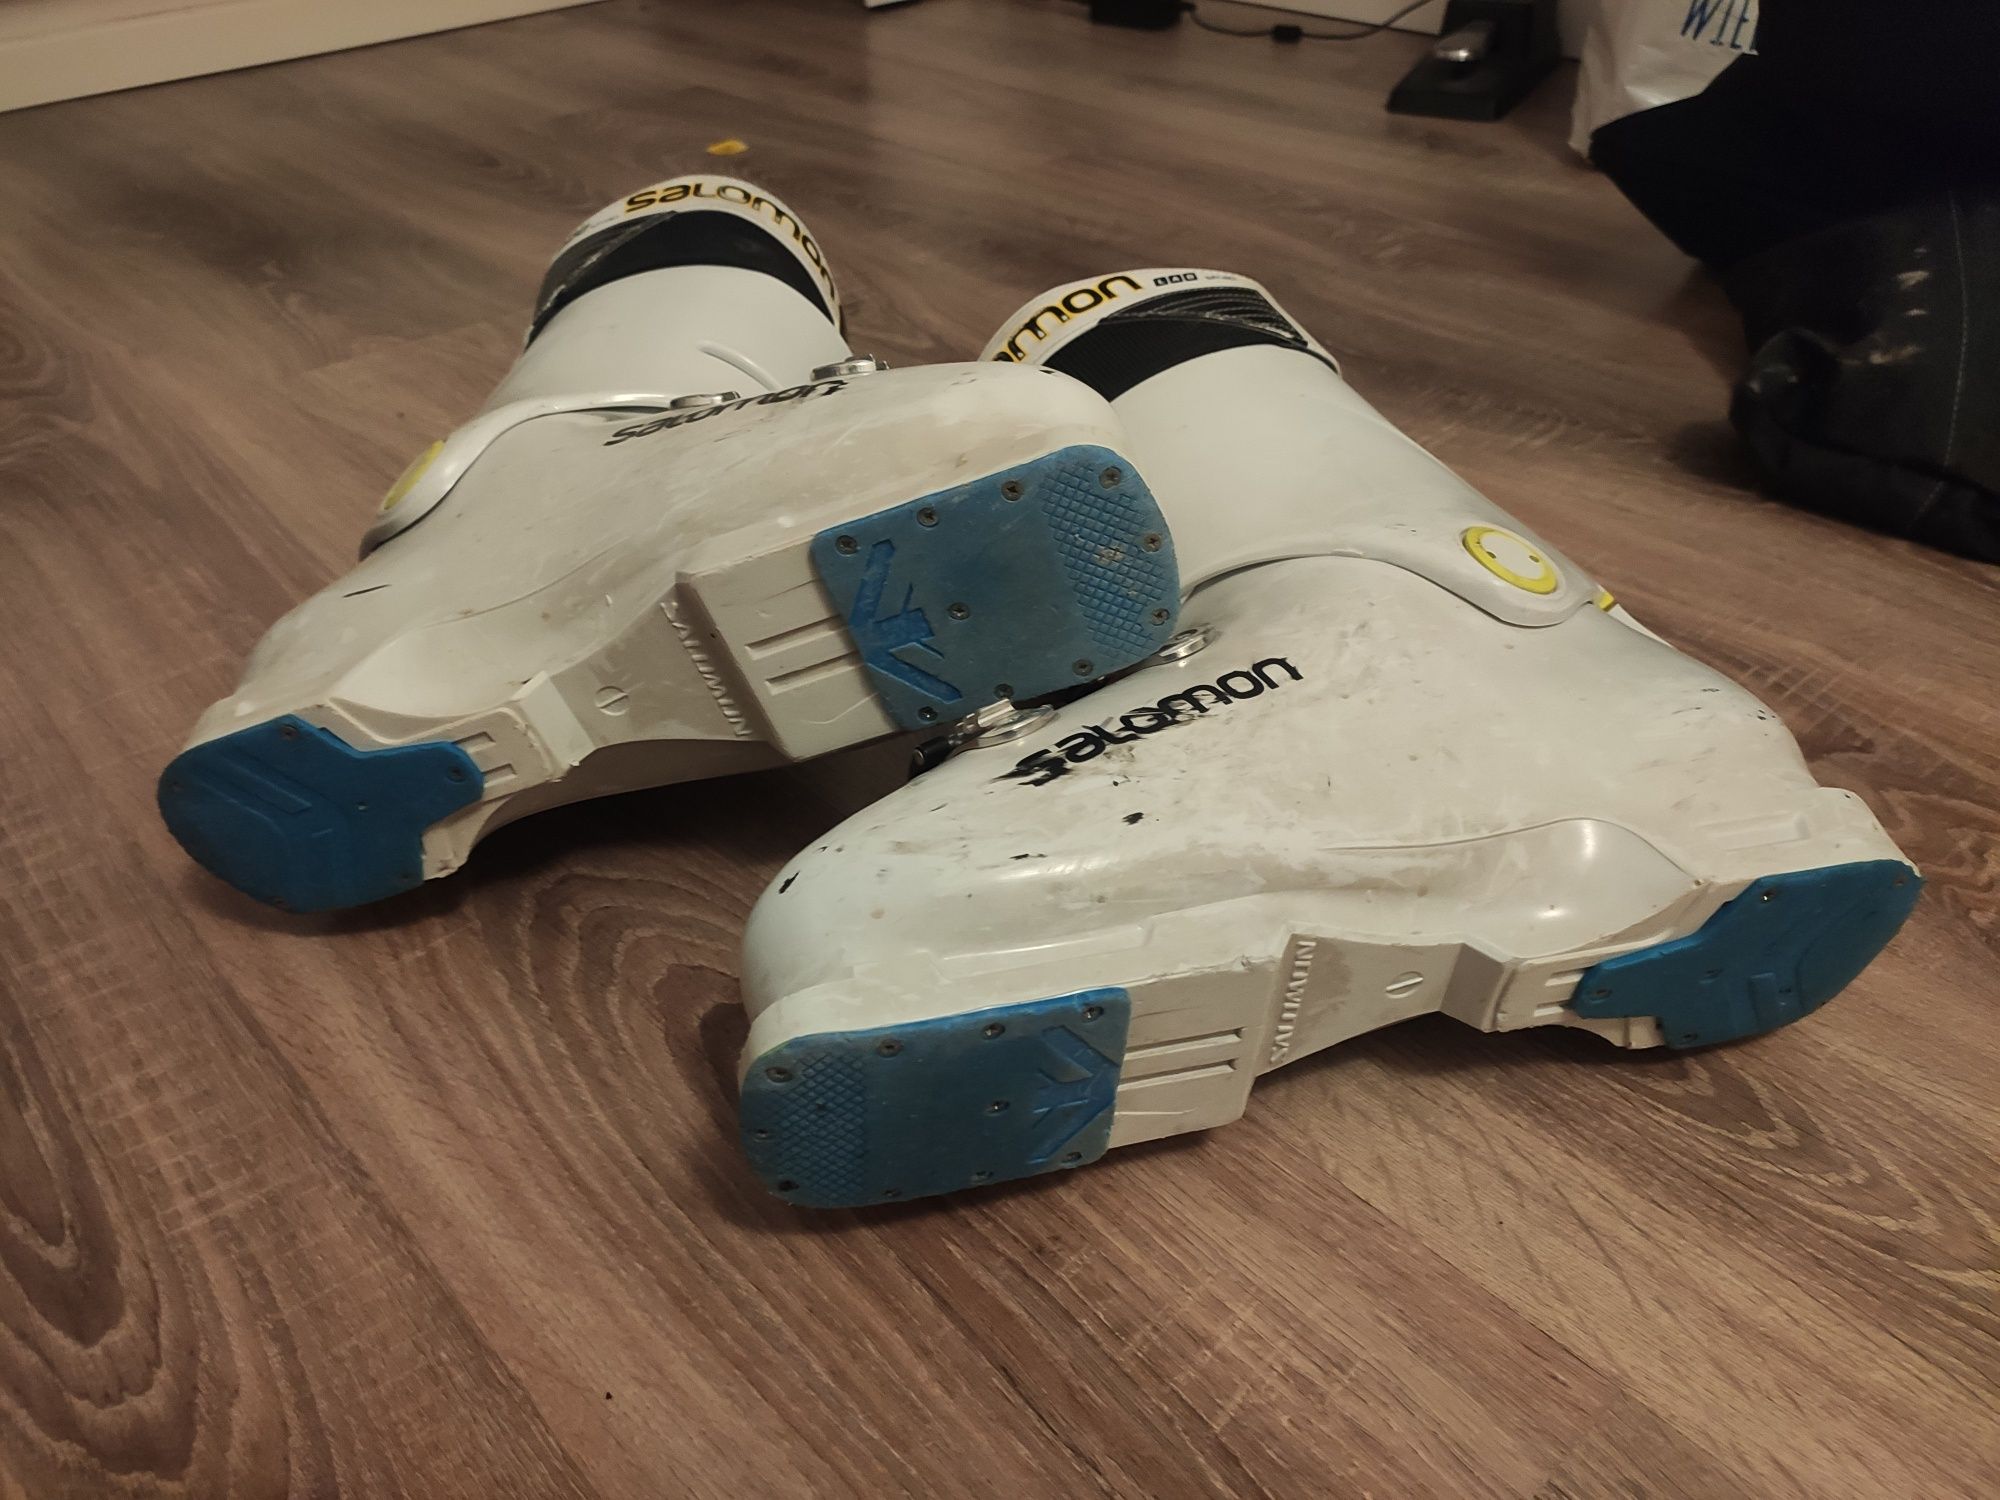 Zawodnicze buty narciarskie Salomon X-Lab 130 rozmiar 28